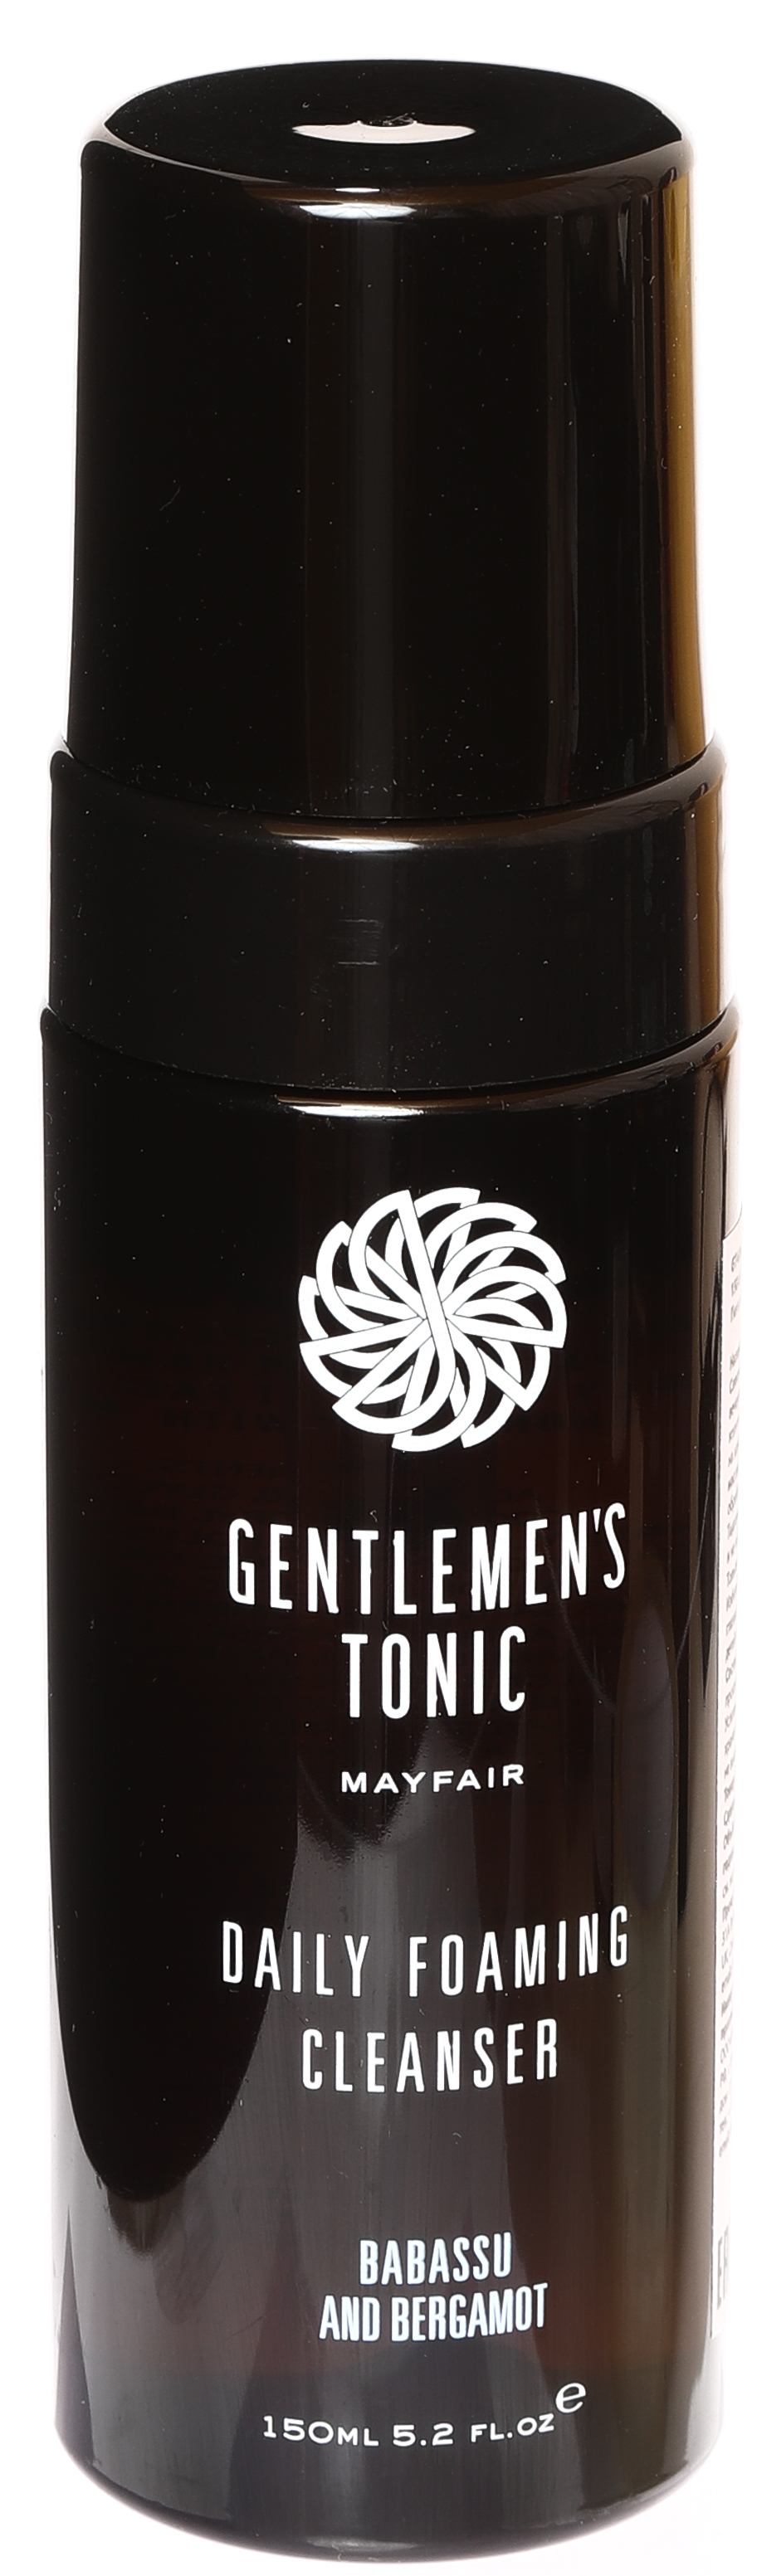 Пенка для умывания очищающая для мужчин Gentlemen's Tonic 150 мл vellutier свеча клуб джентельменов gentlemen s lounge 225